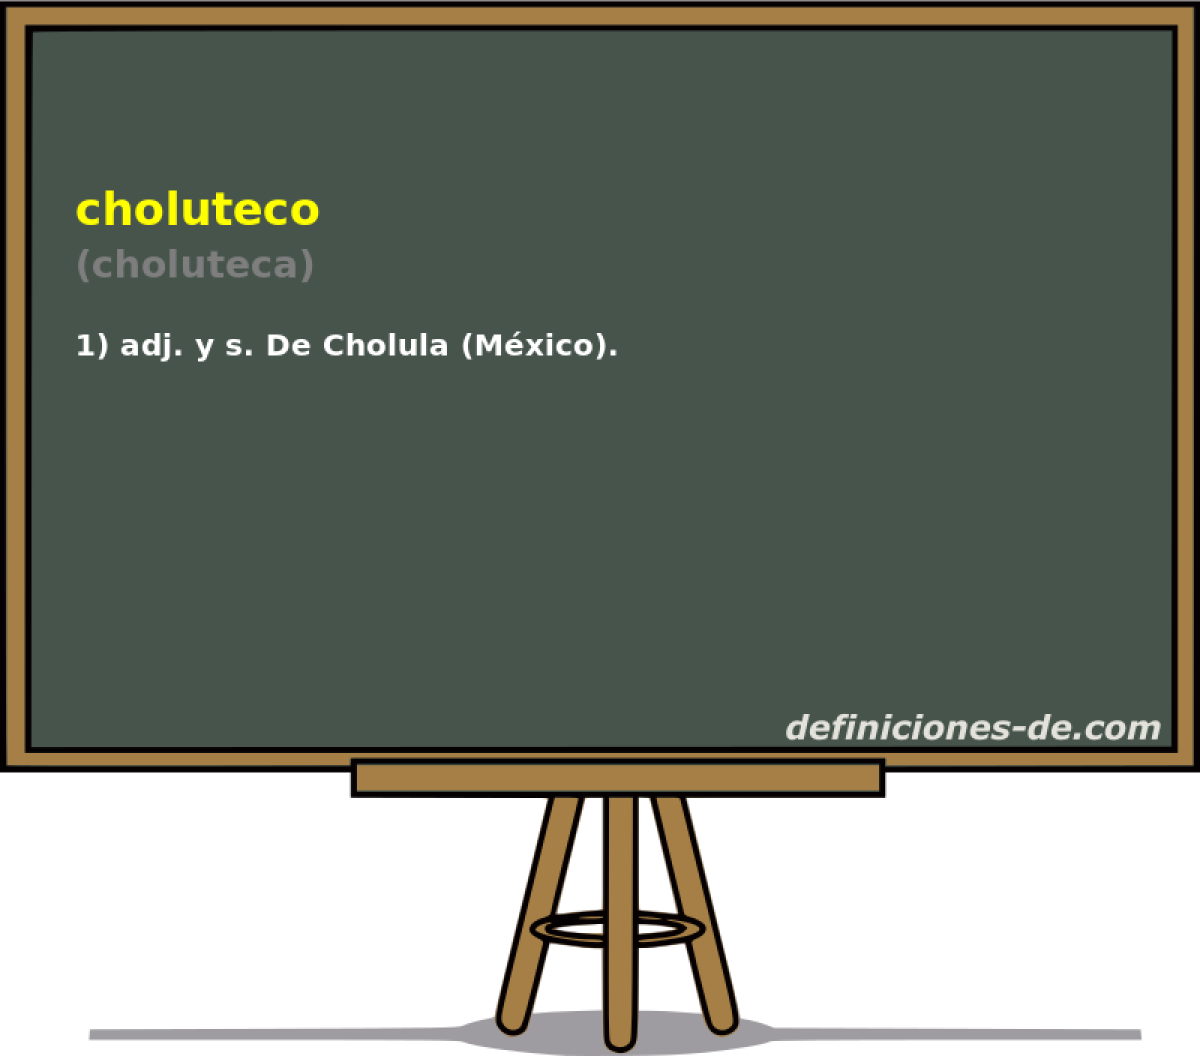 choluteco (choluteca)